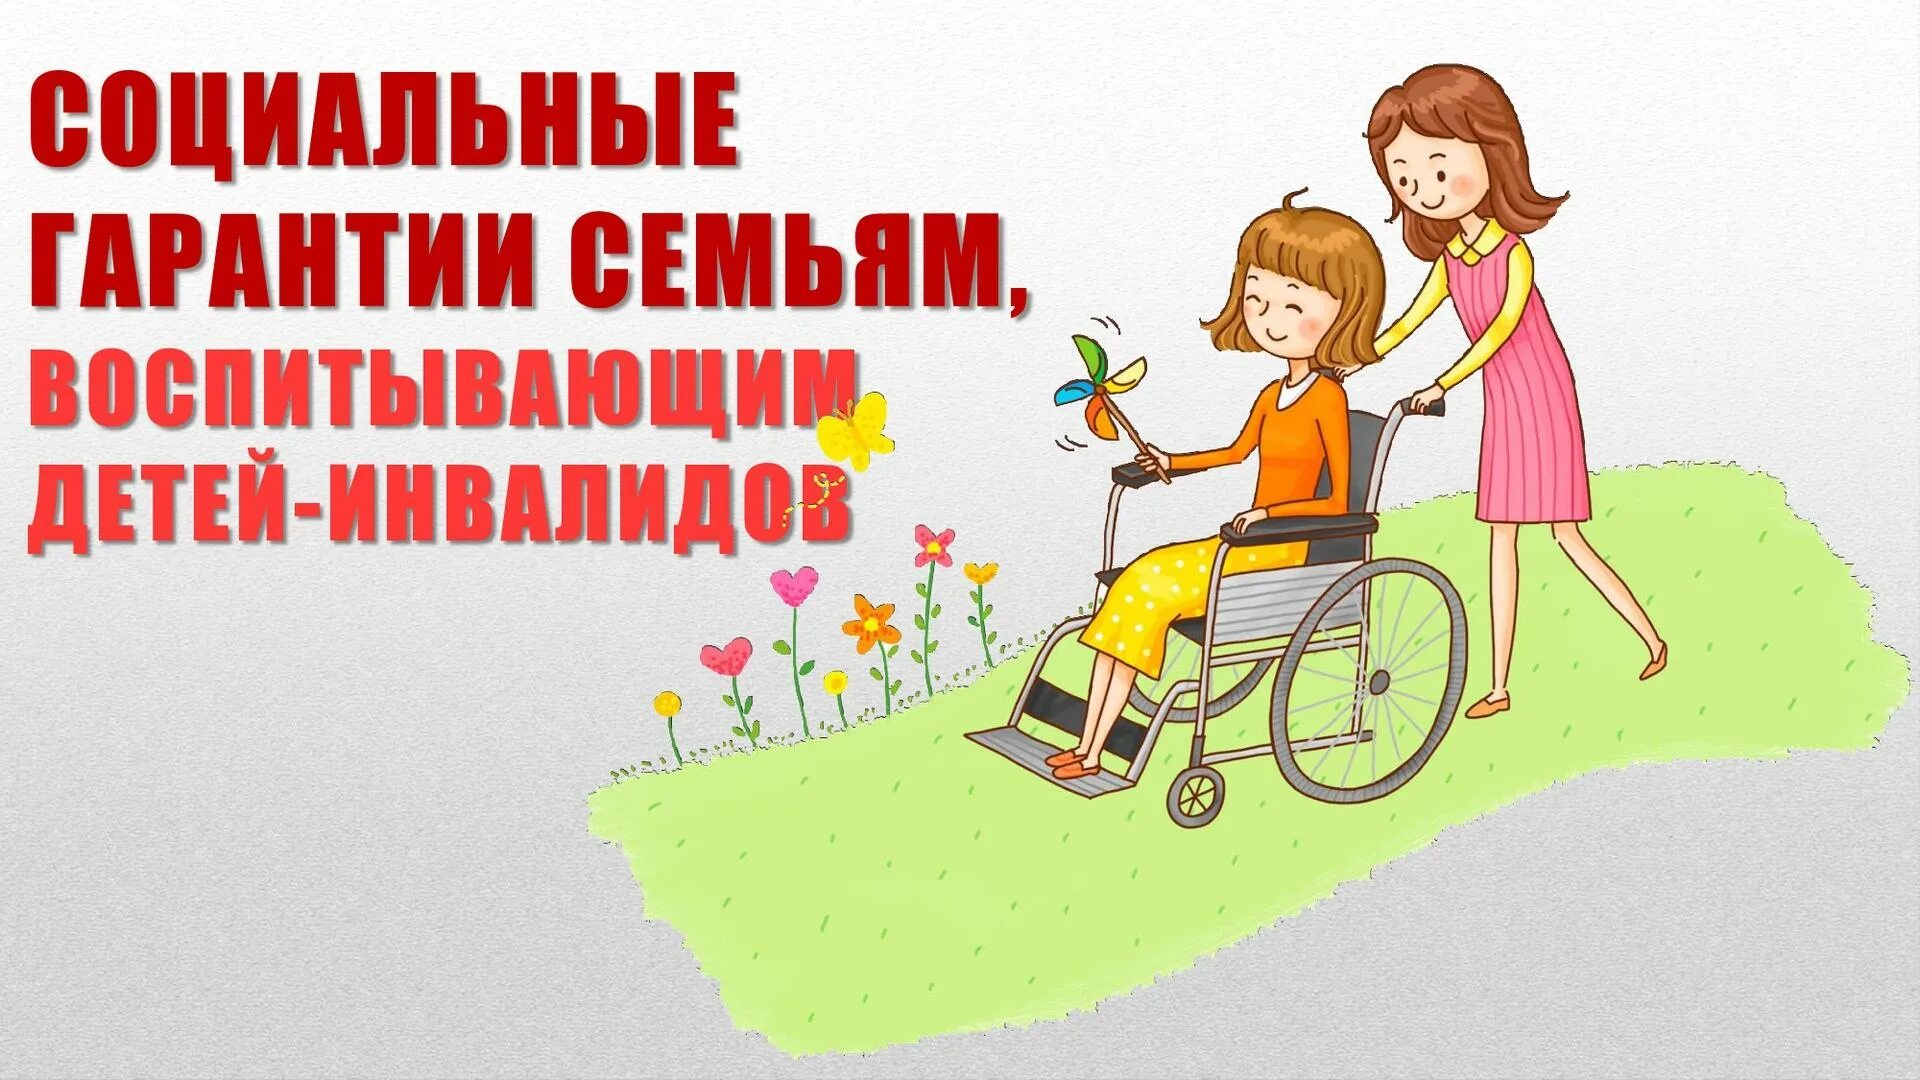 Социальные гарантии семьям с детьми. Логотип инвалидов картинки. Листовка по теме помощи семьям воспит детей с инвалидностью. Логотип инвалидов. Социальная гарантии детей